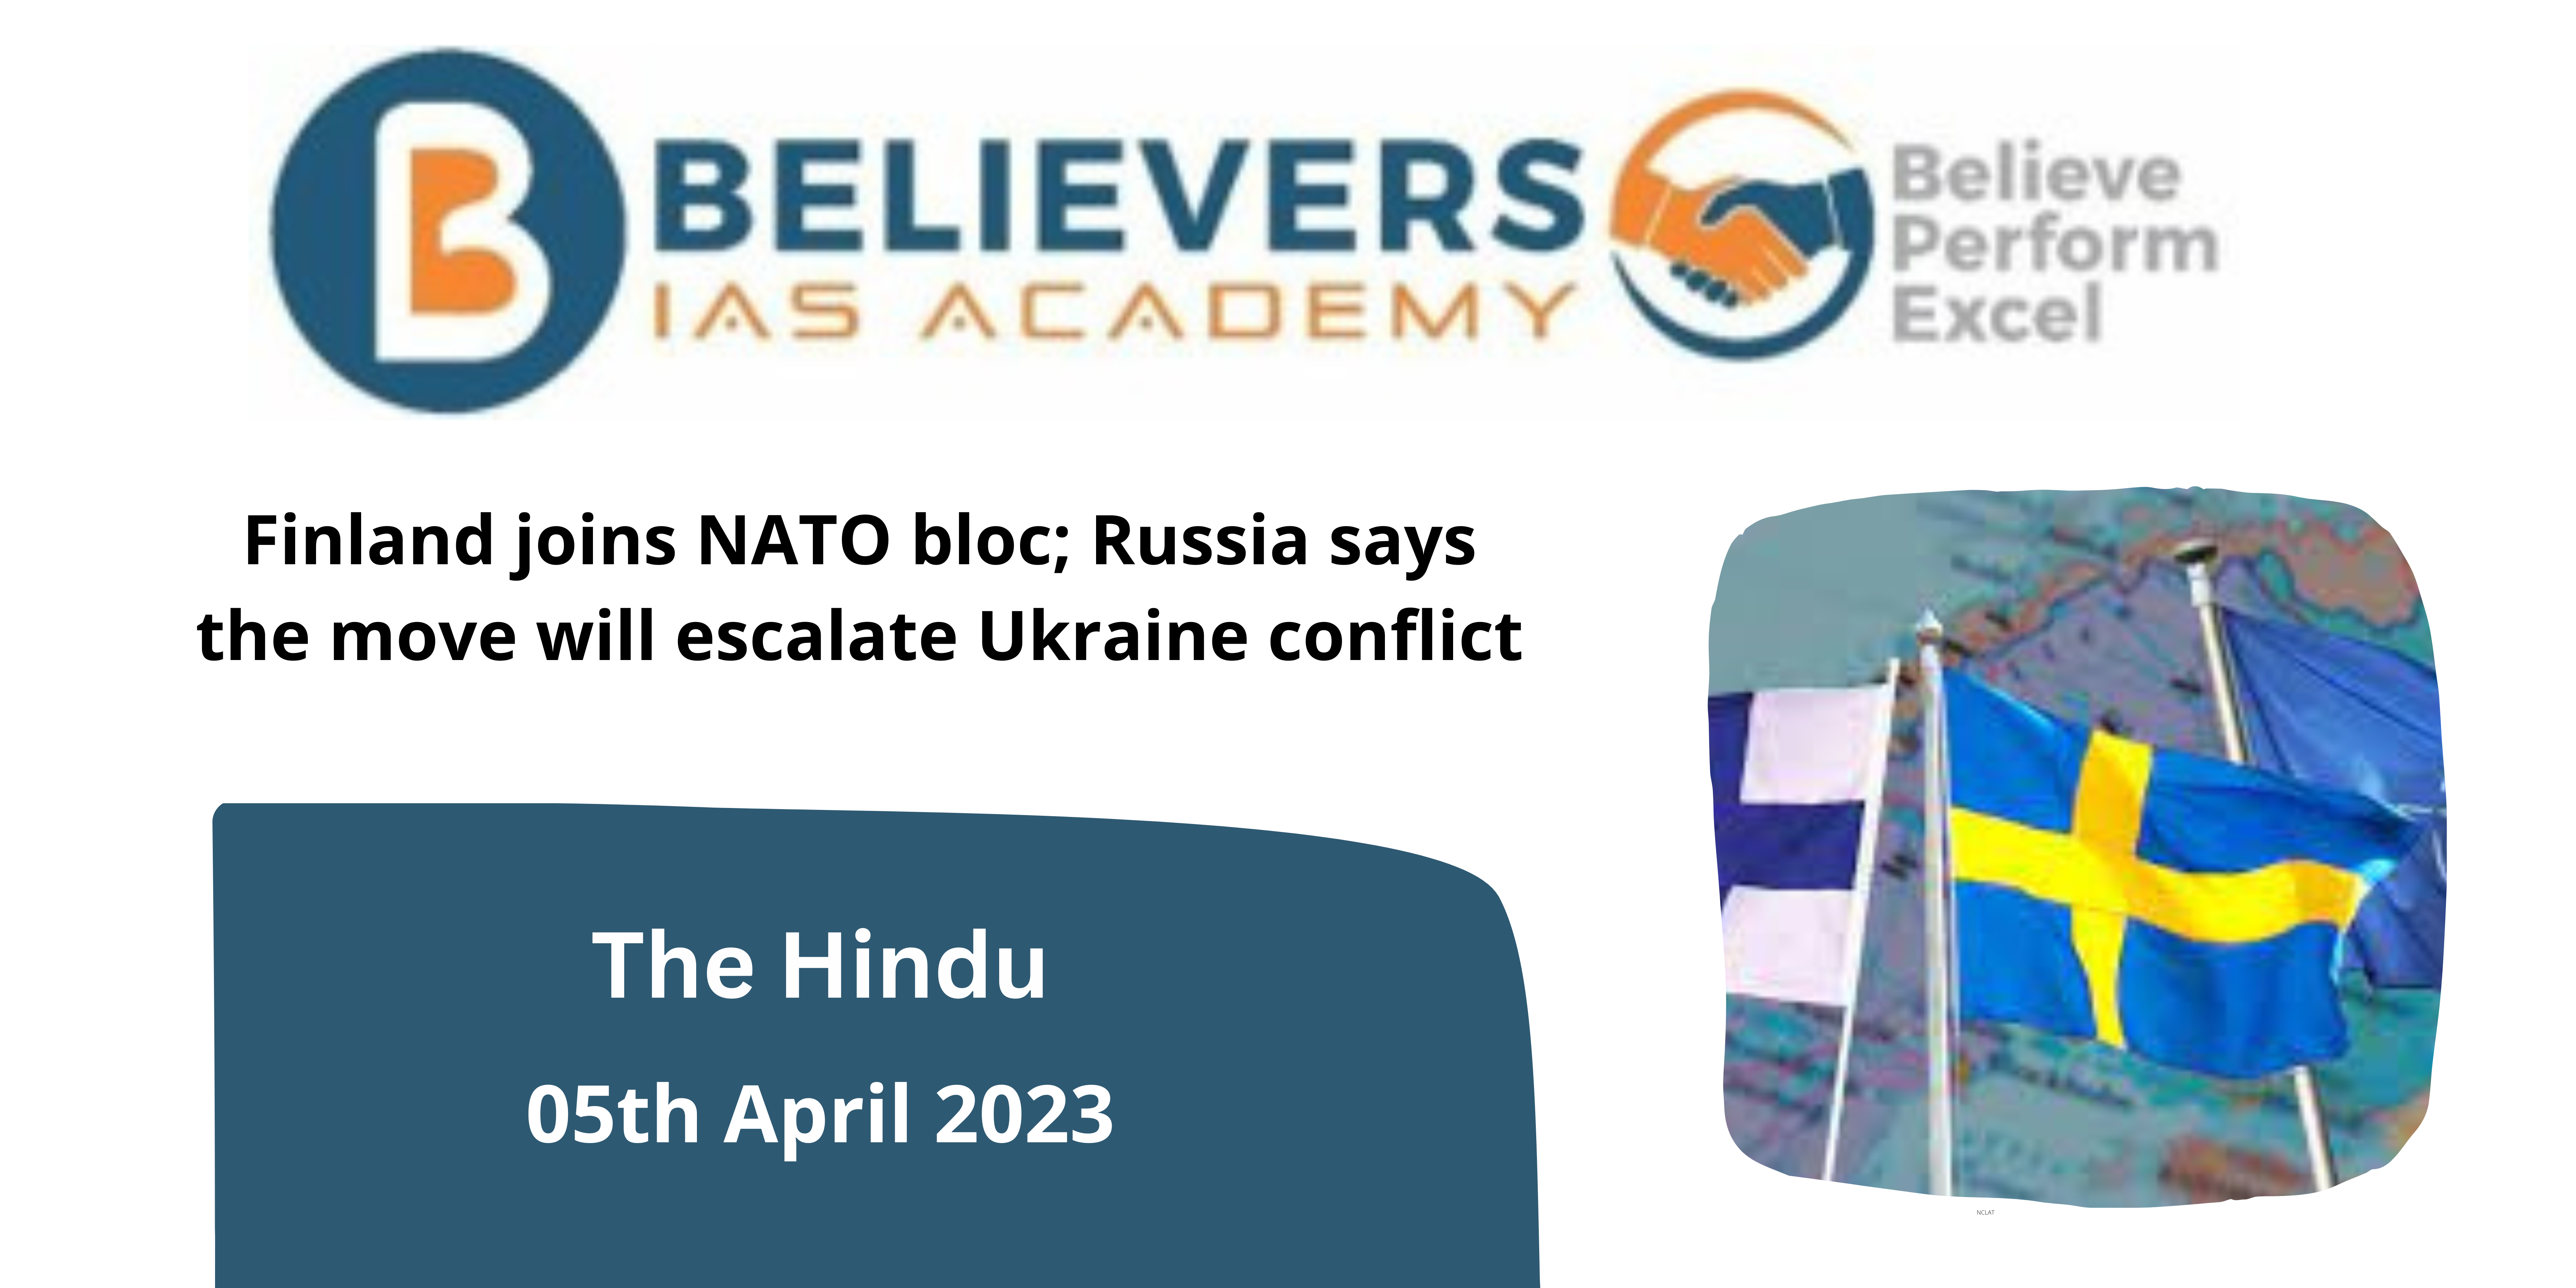 Finland joins NATO bloc; Russia says the move will escalate Ukraine conflict